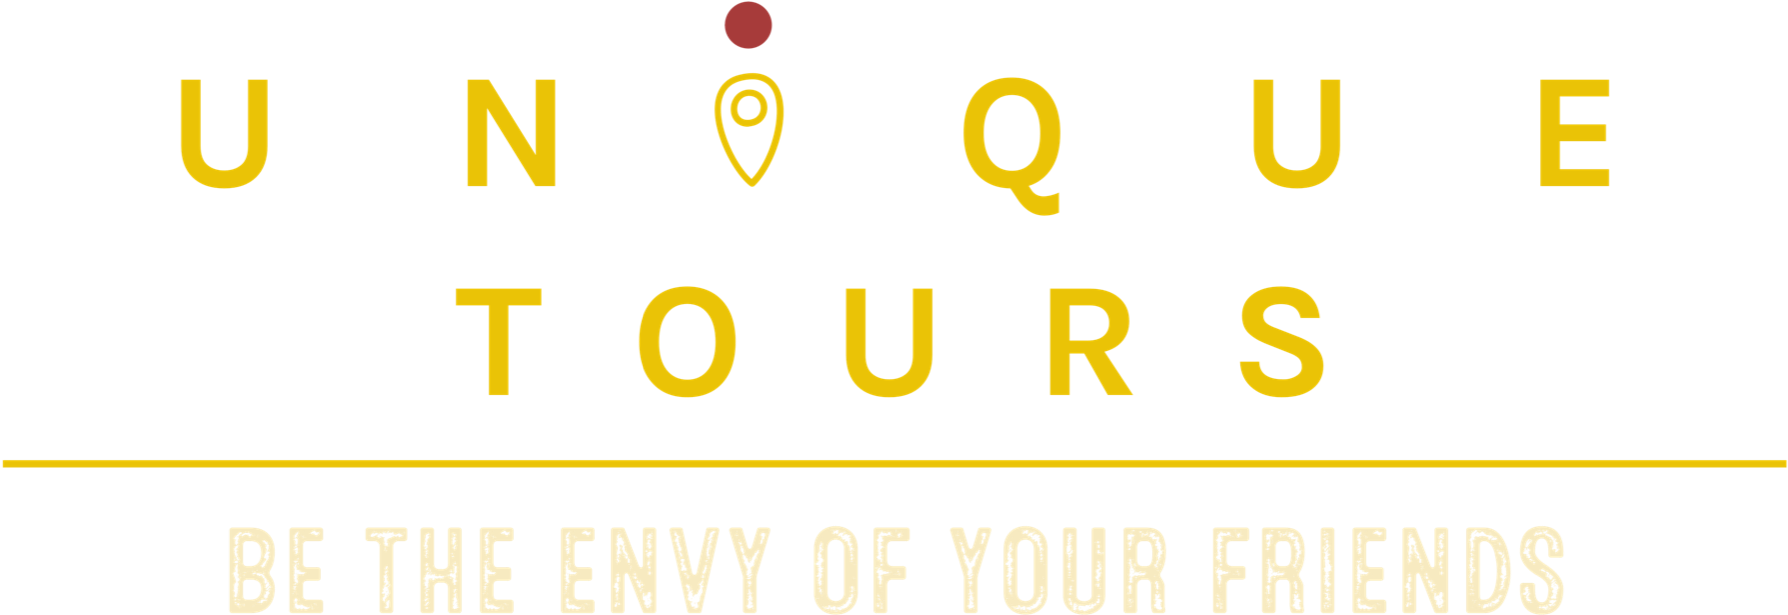 Unique Tours Logo Tagline PNG image